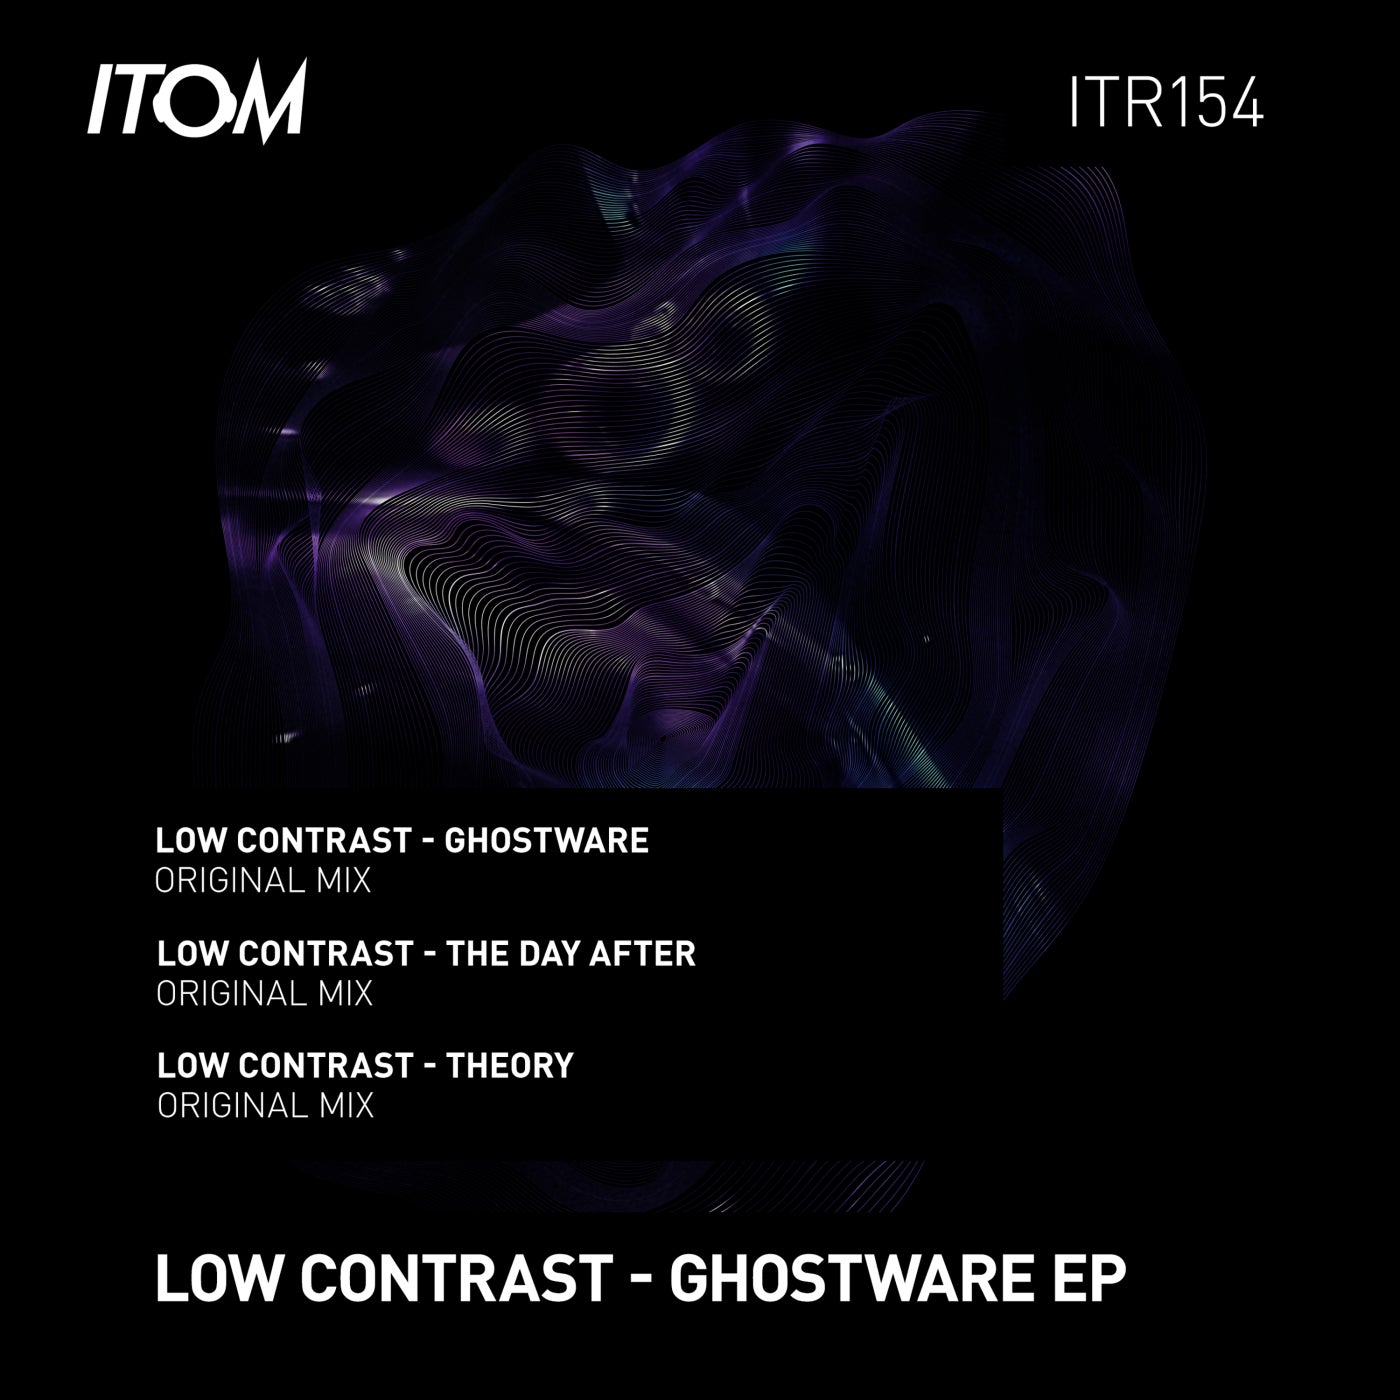 Low Contrast – Ghostware [ITR154]